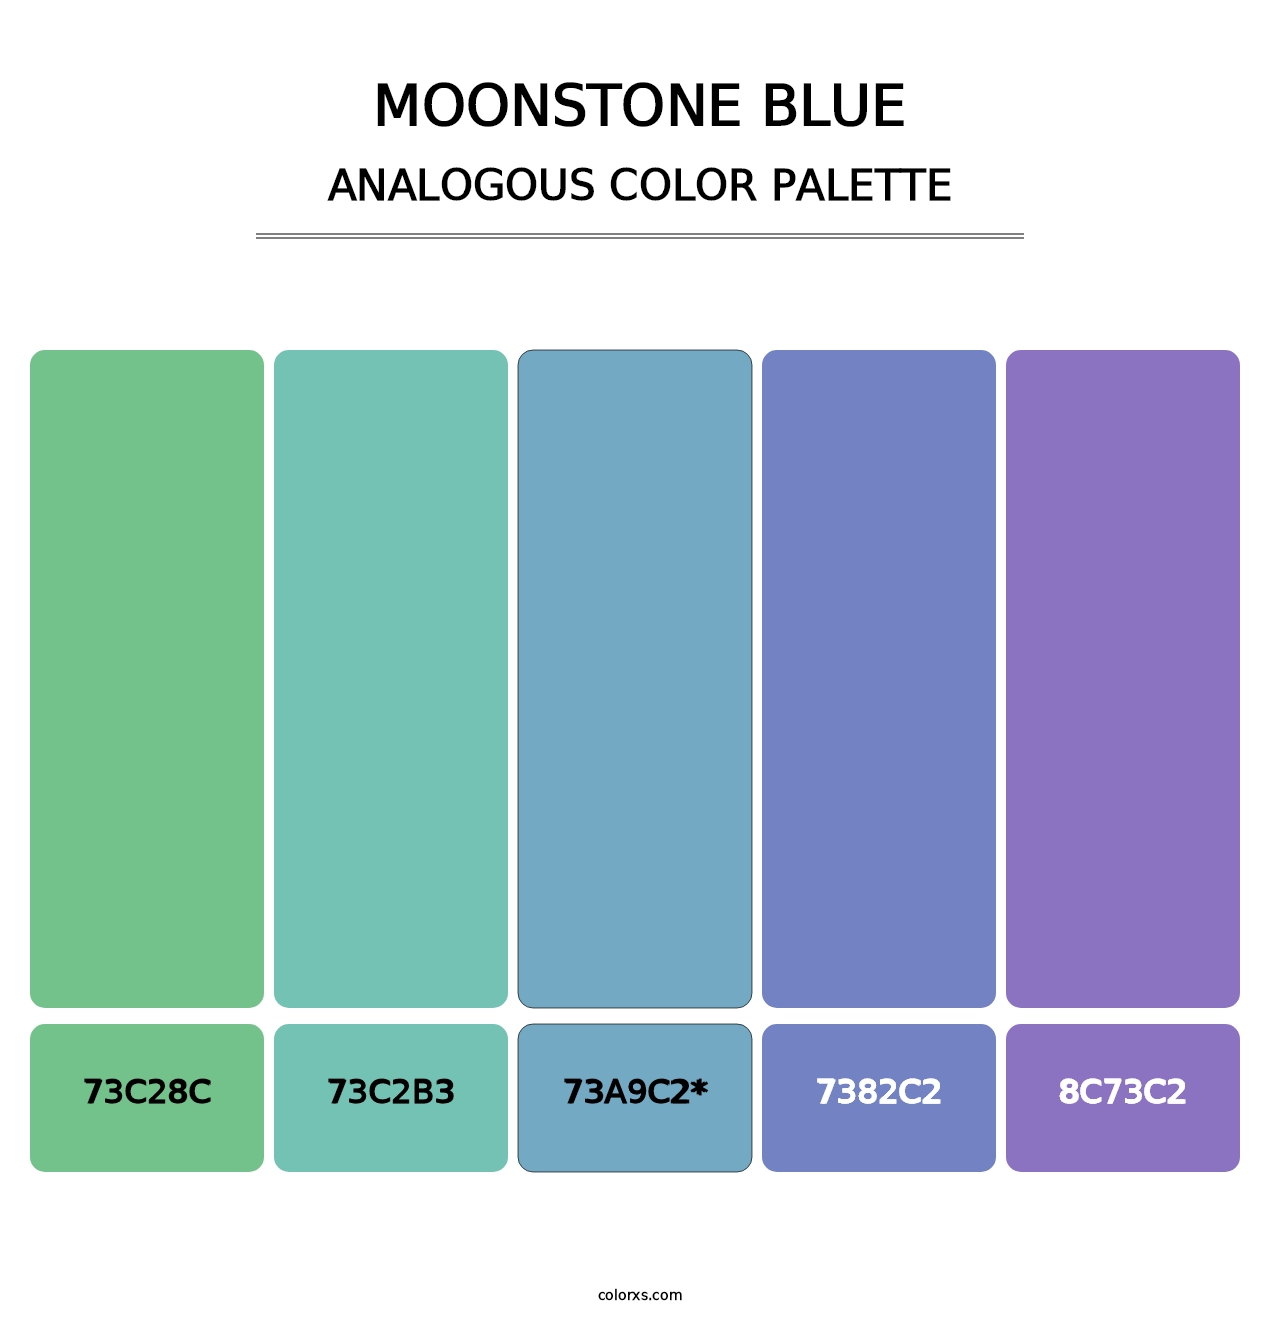 Moonstone Blue - Analogous Color Palette